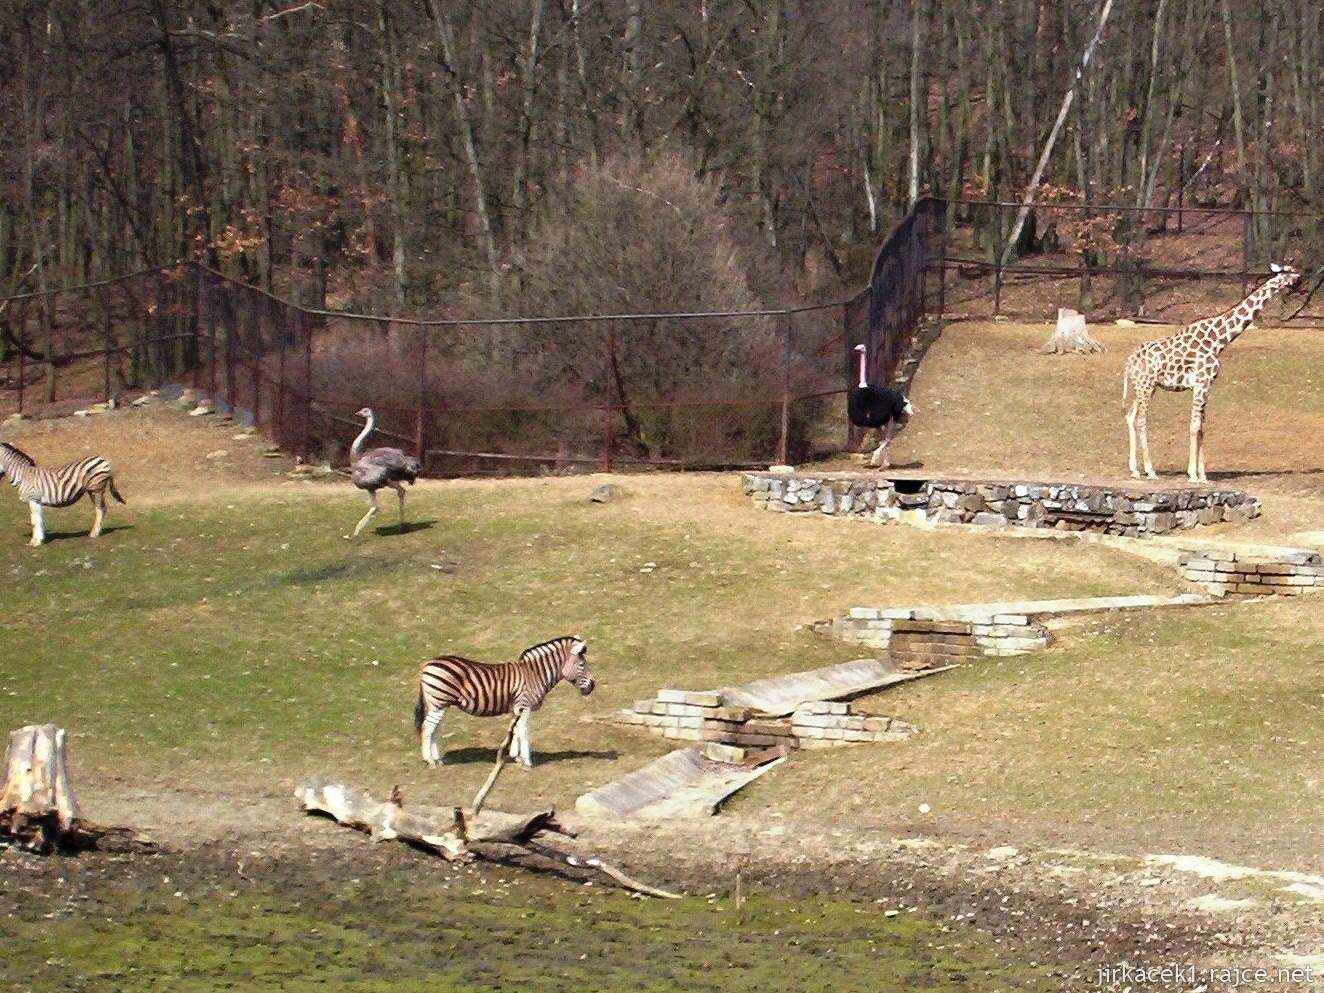 Brno - ZOO - Zoologická zahrada 2007 - zebry a žirafy